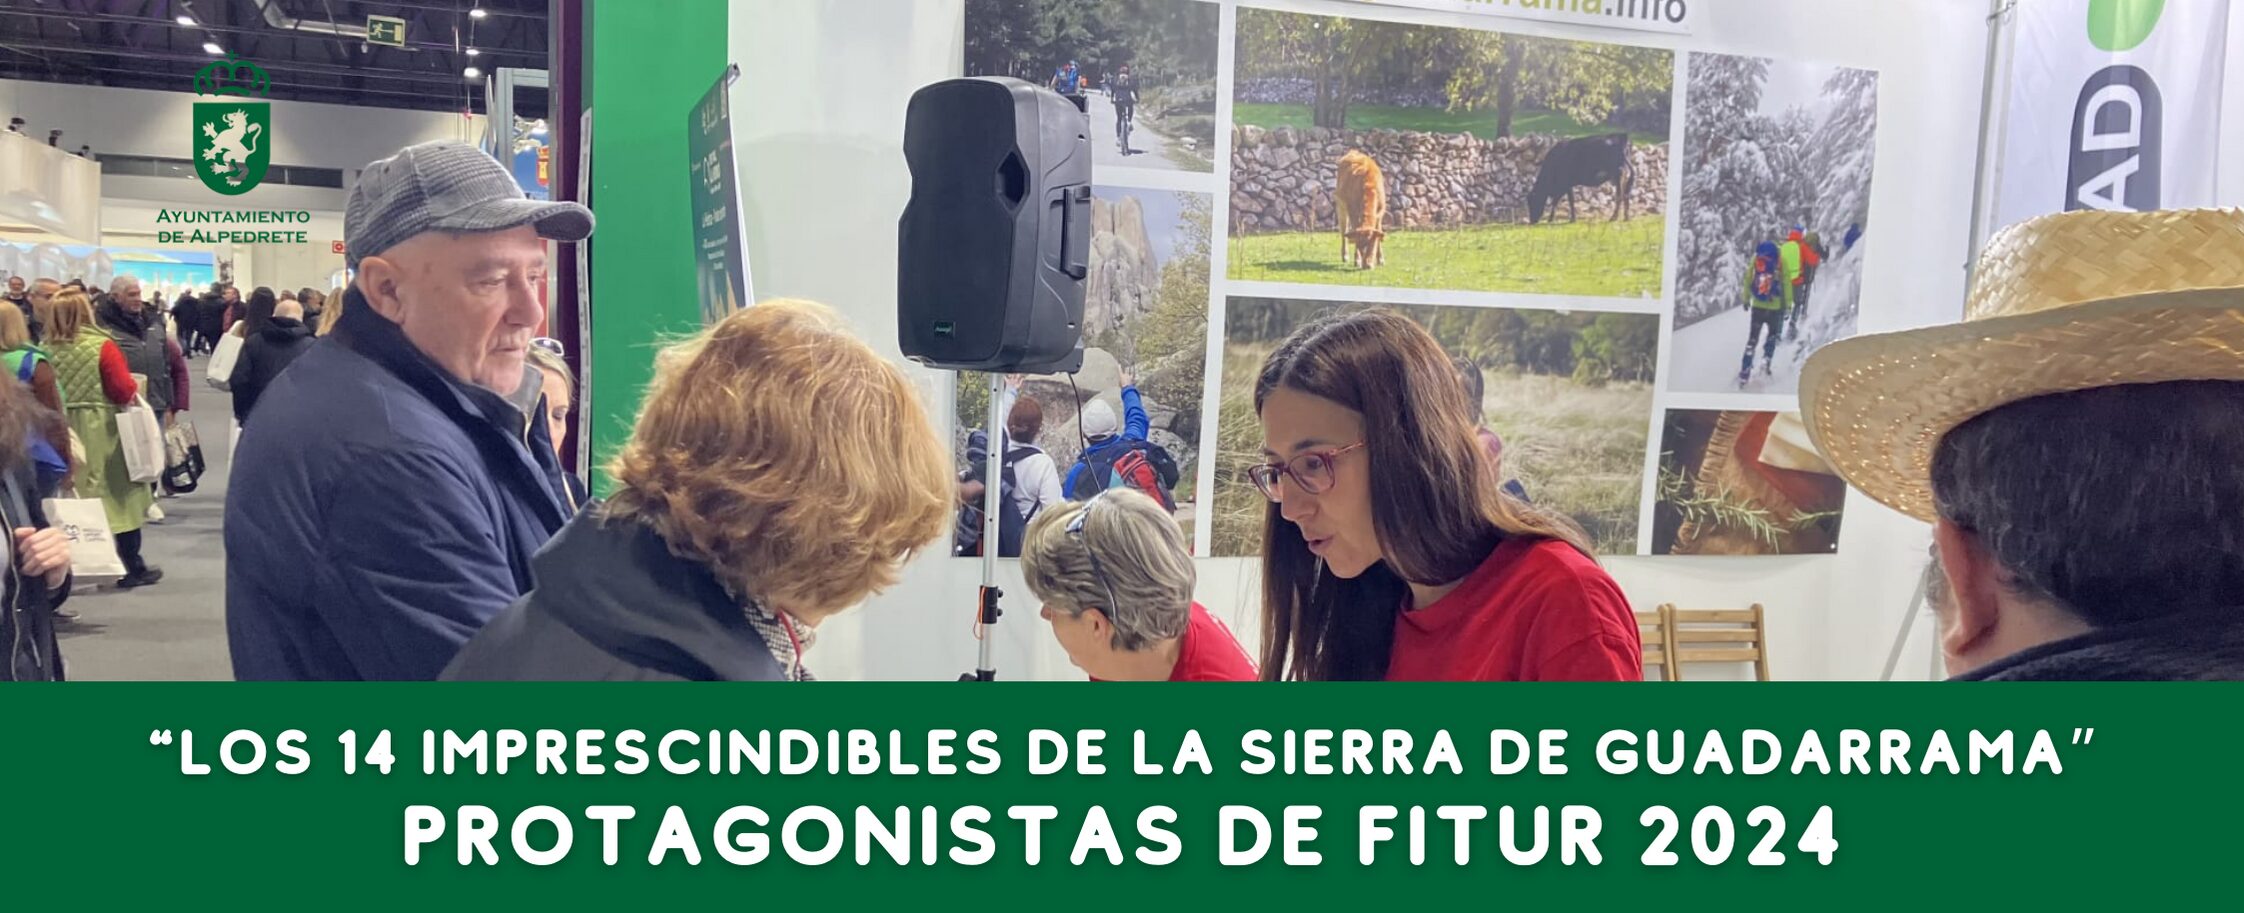 Imagen de la noticia “Los 14 Imprescindibles de la Sierra de Guadarrama” protagonistas de FITUR 2024